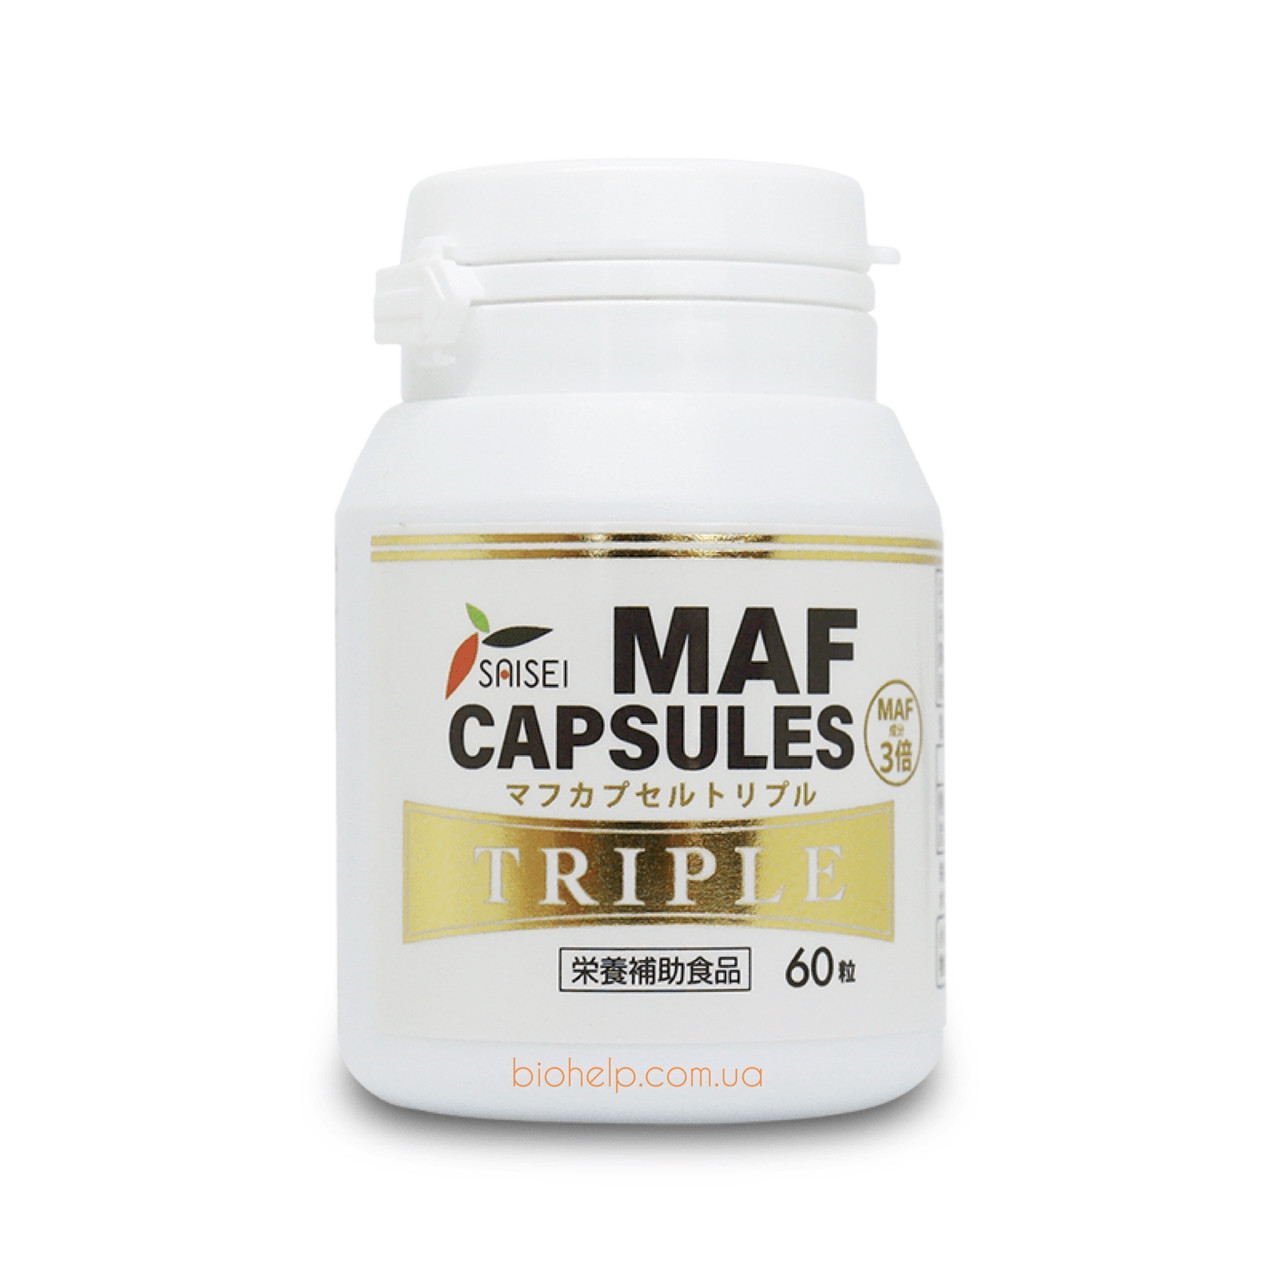 GcMAF (жисіМаф) MAF Capsules Triple MAF (3X Активні інгредієнти) для підвищення імунітету 60 капсул. Японія.